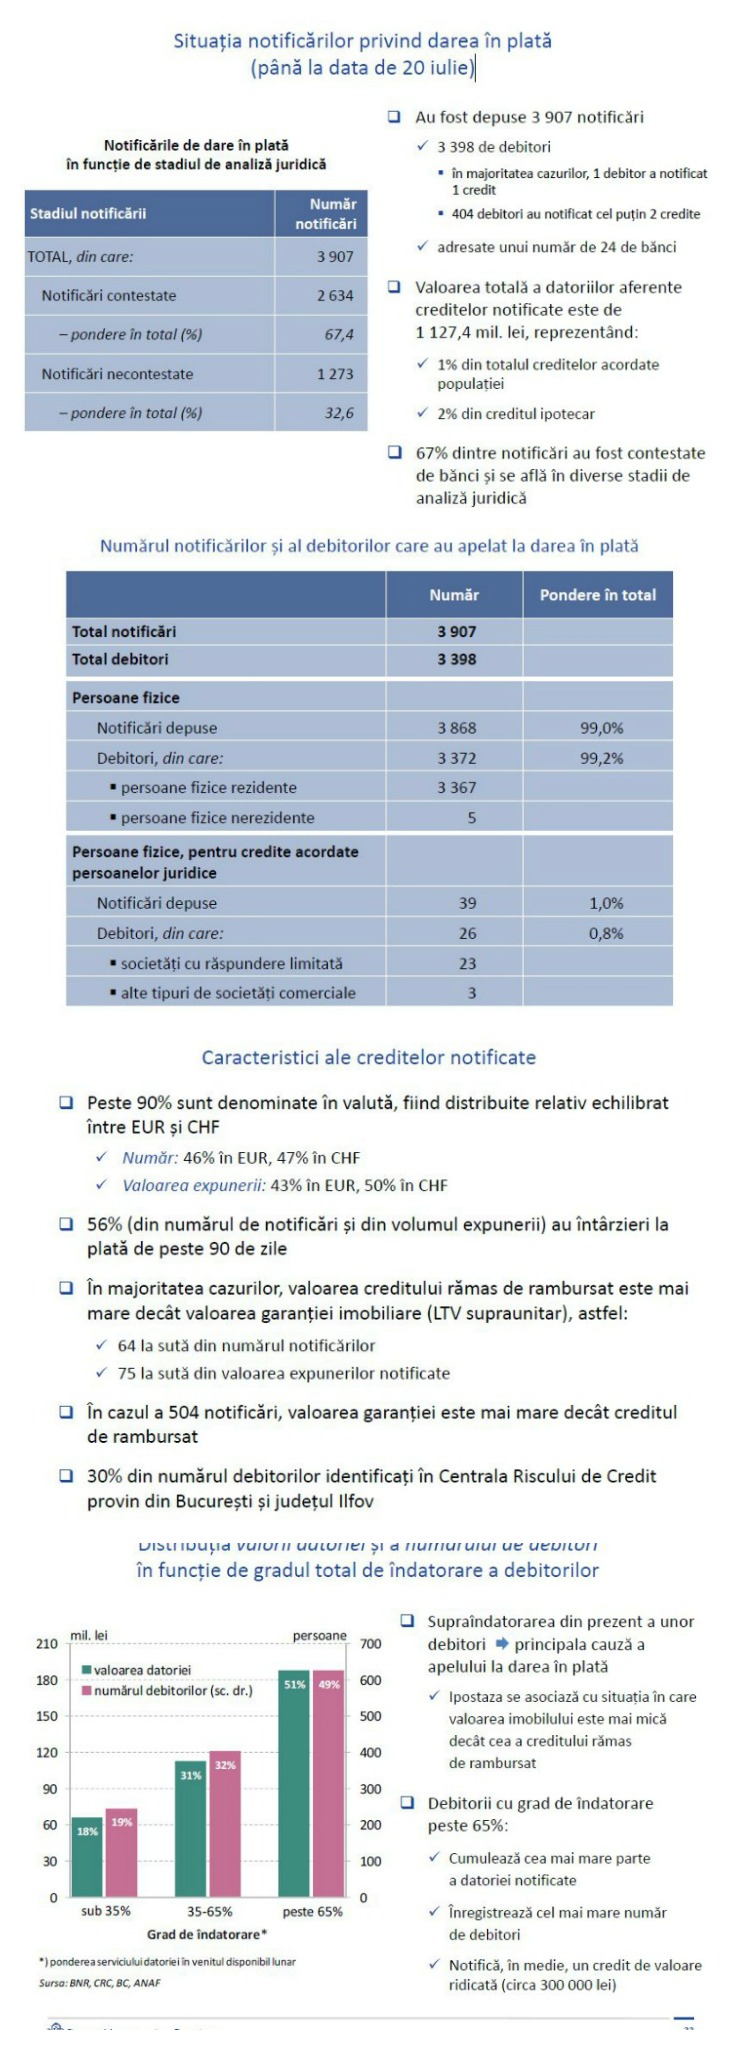 Mugur Isărescu: Avem 3.907 notificări de dare în plată. 67% dintre notificări au fost contestate de bănci.